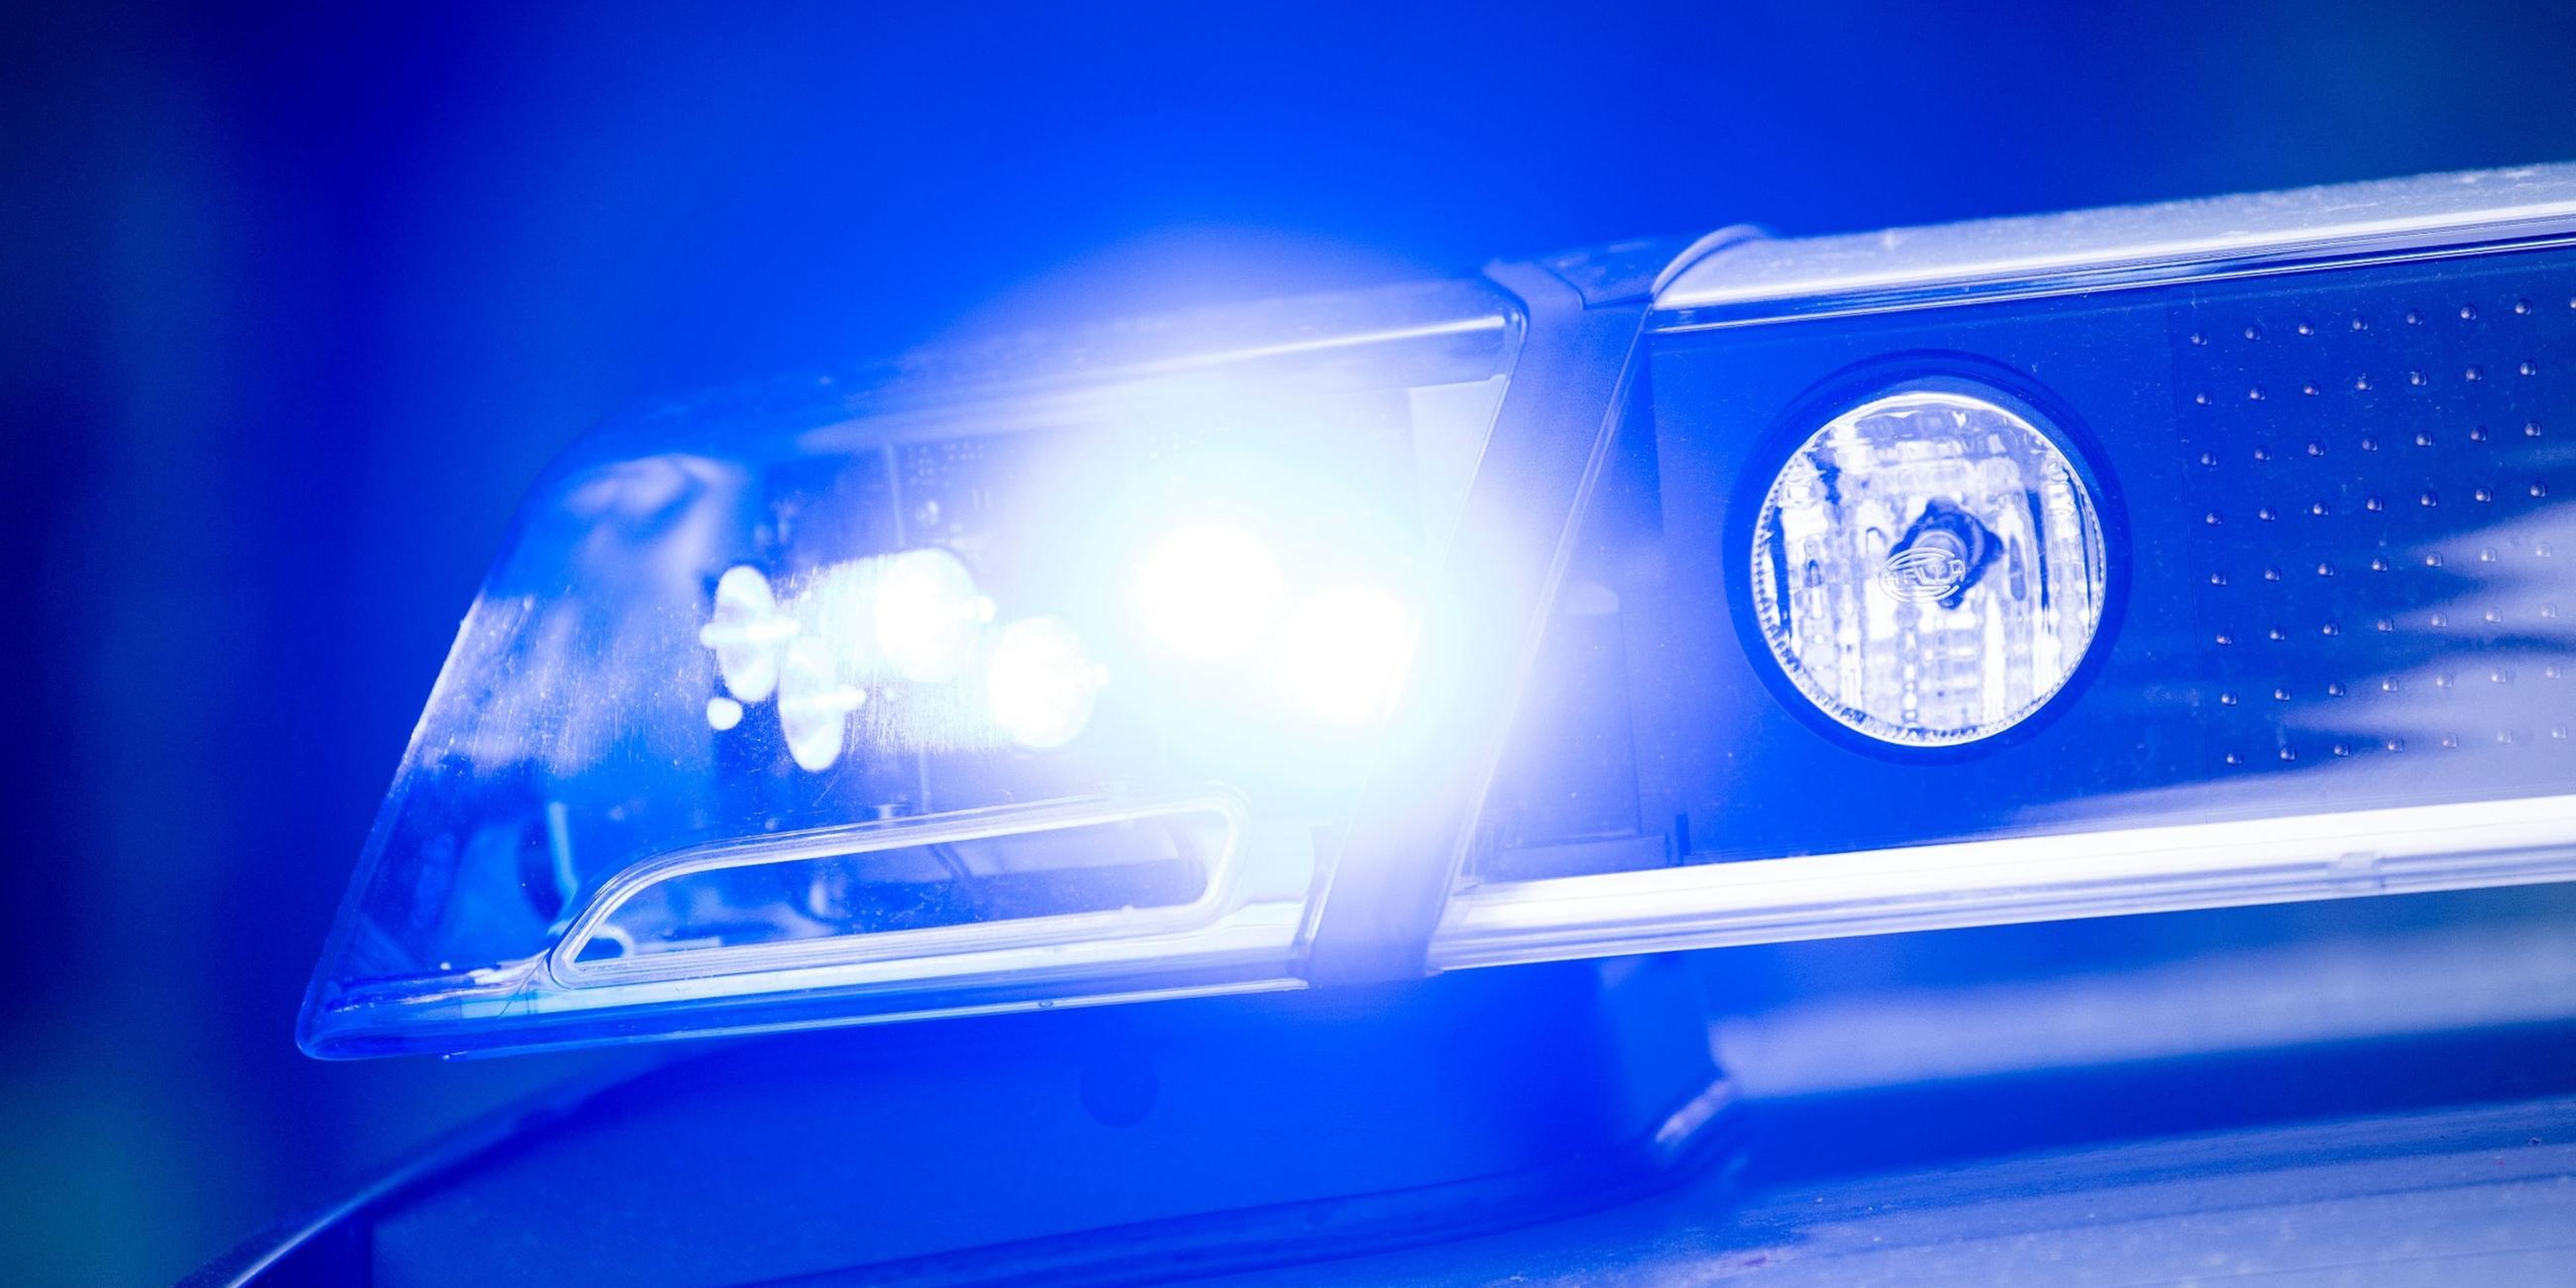 Ein leuchtendes Blaulicht auf einem Polizeifahrzeug.